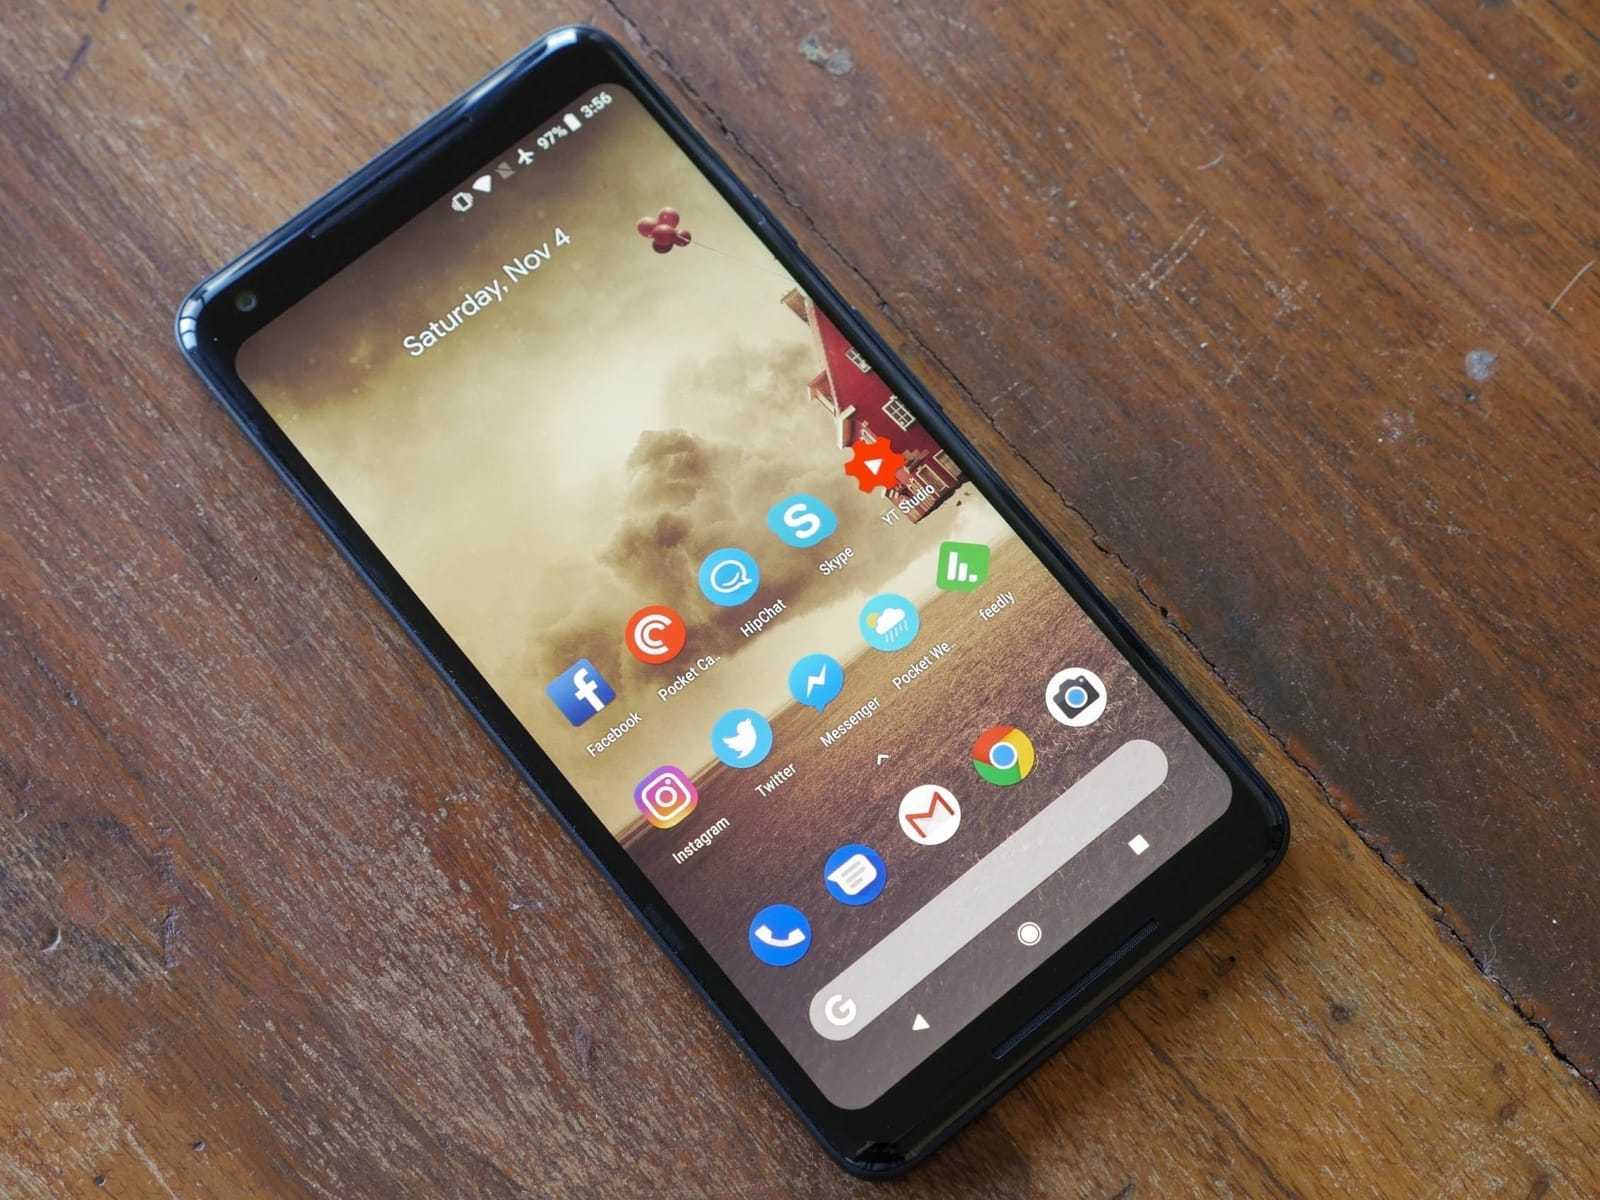 Новый Google Pixel 2 порадовал защитой от воды и пыли, сенсорными боковыми гранями для вызова Google Assistant, Snapdragon 835 и 4 ГБ оперативки 3,5-миллиме